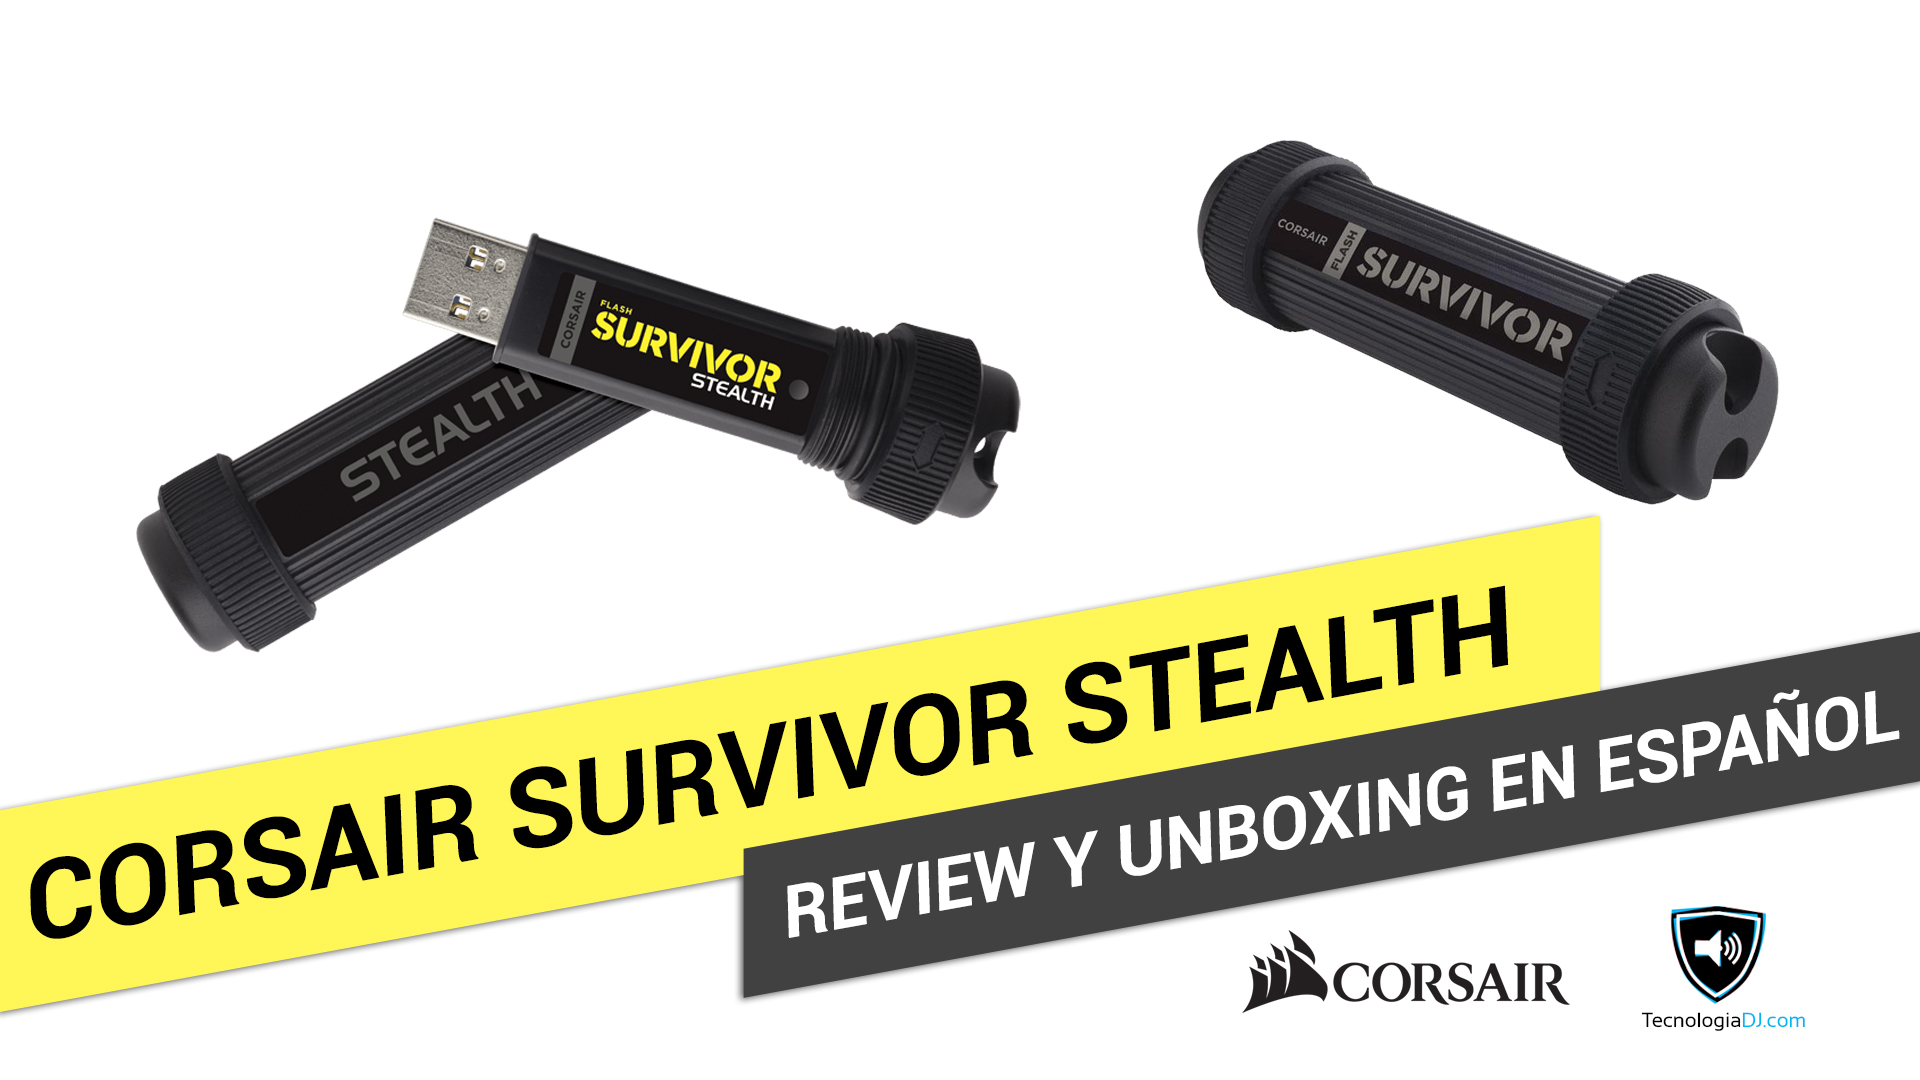 Review y unboxing en español memoria USB Corsair Survivor Stealth